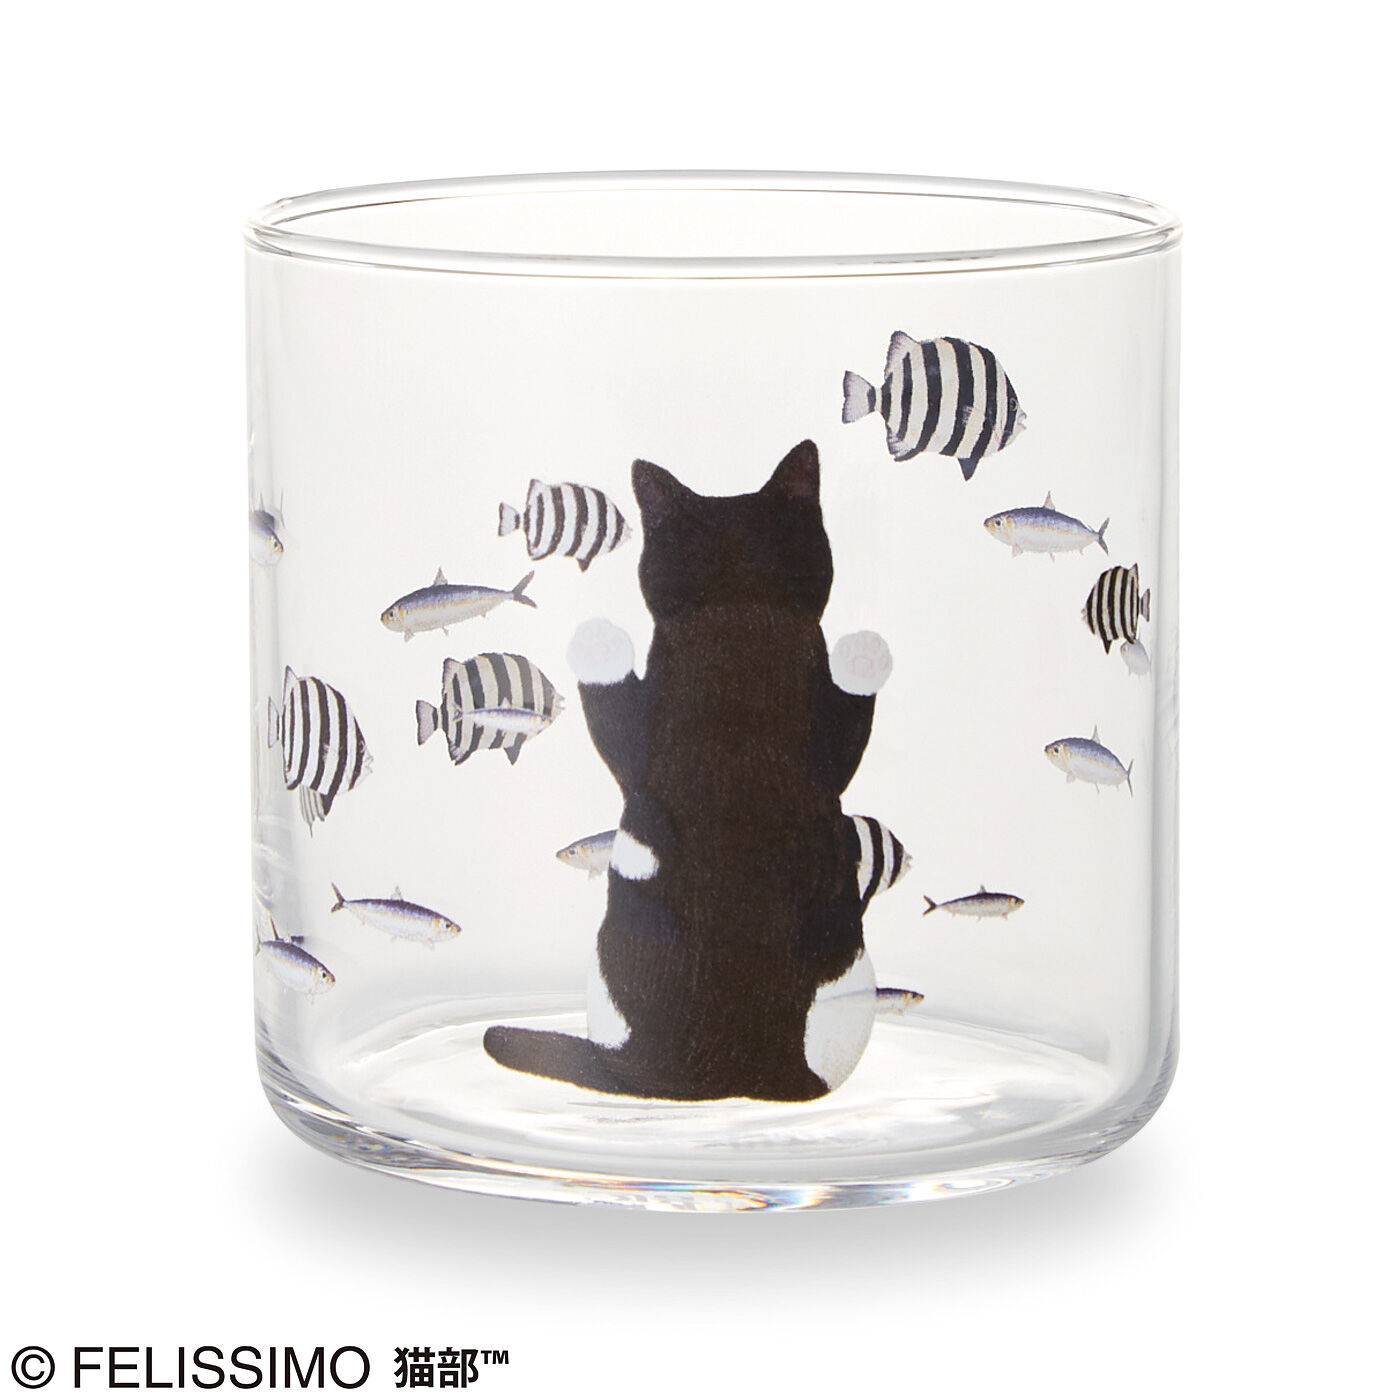 Real Stock|おいしそうだニャ～　猫さん夢の水族館グラス|夢中でのぞき込むうしろ姿に注目！